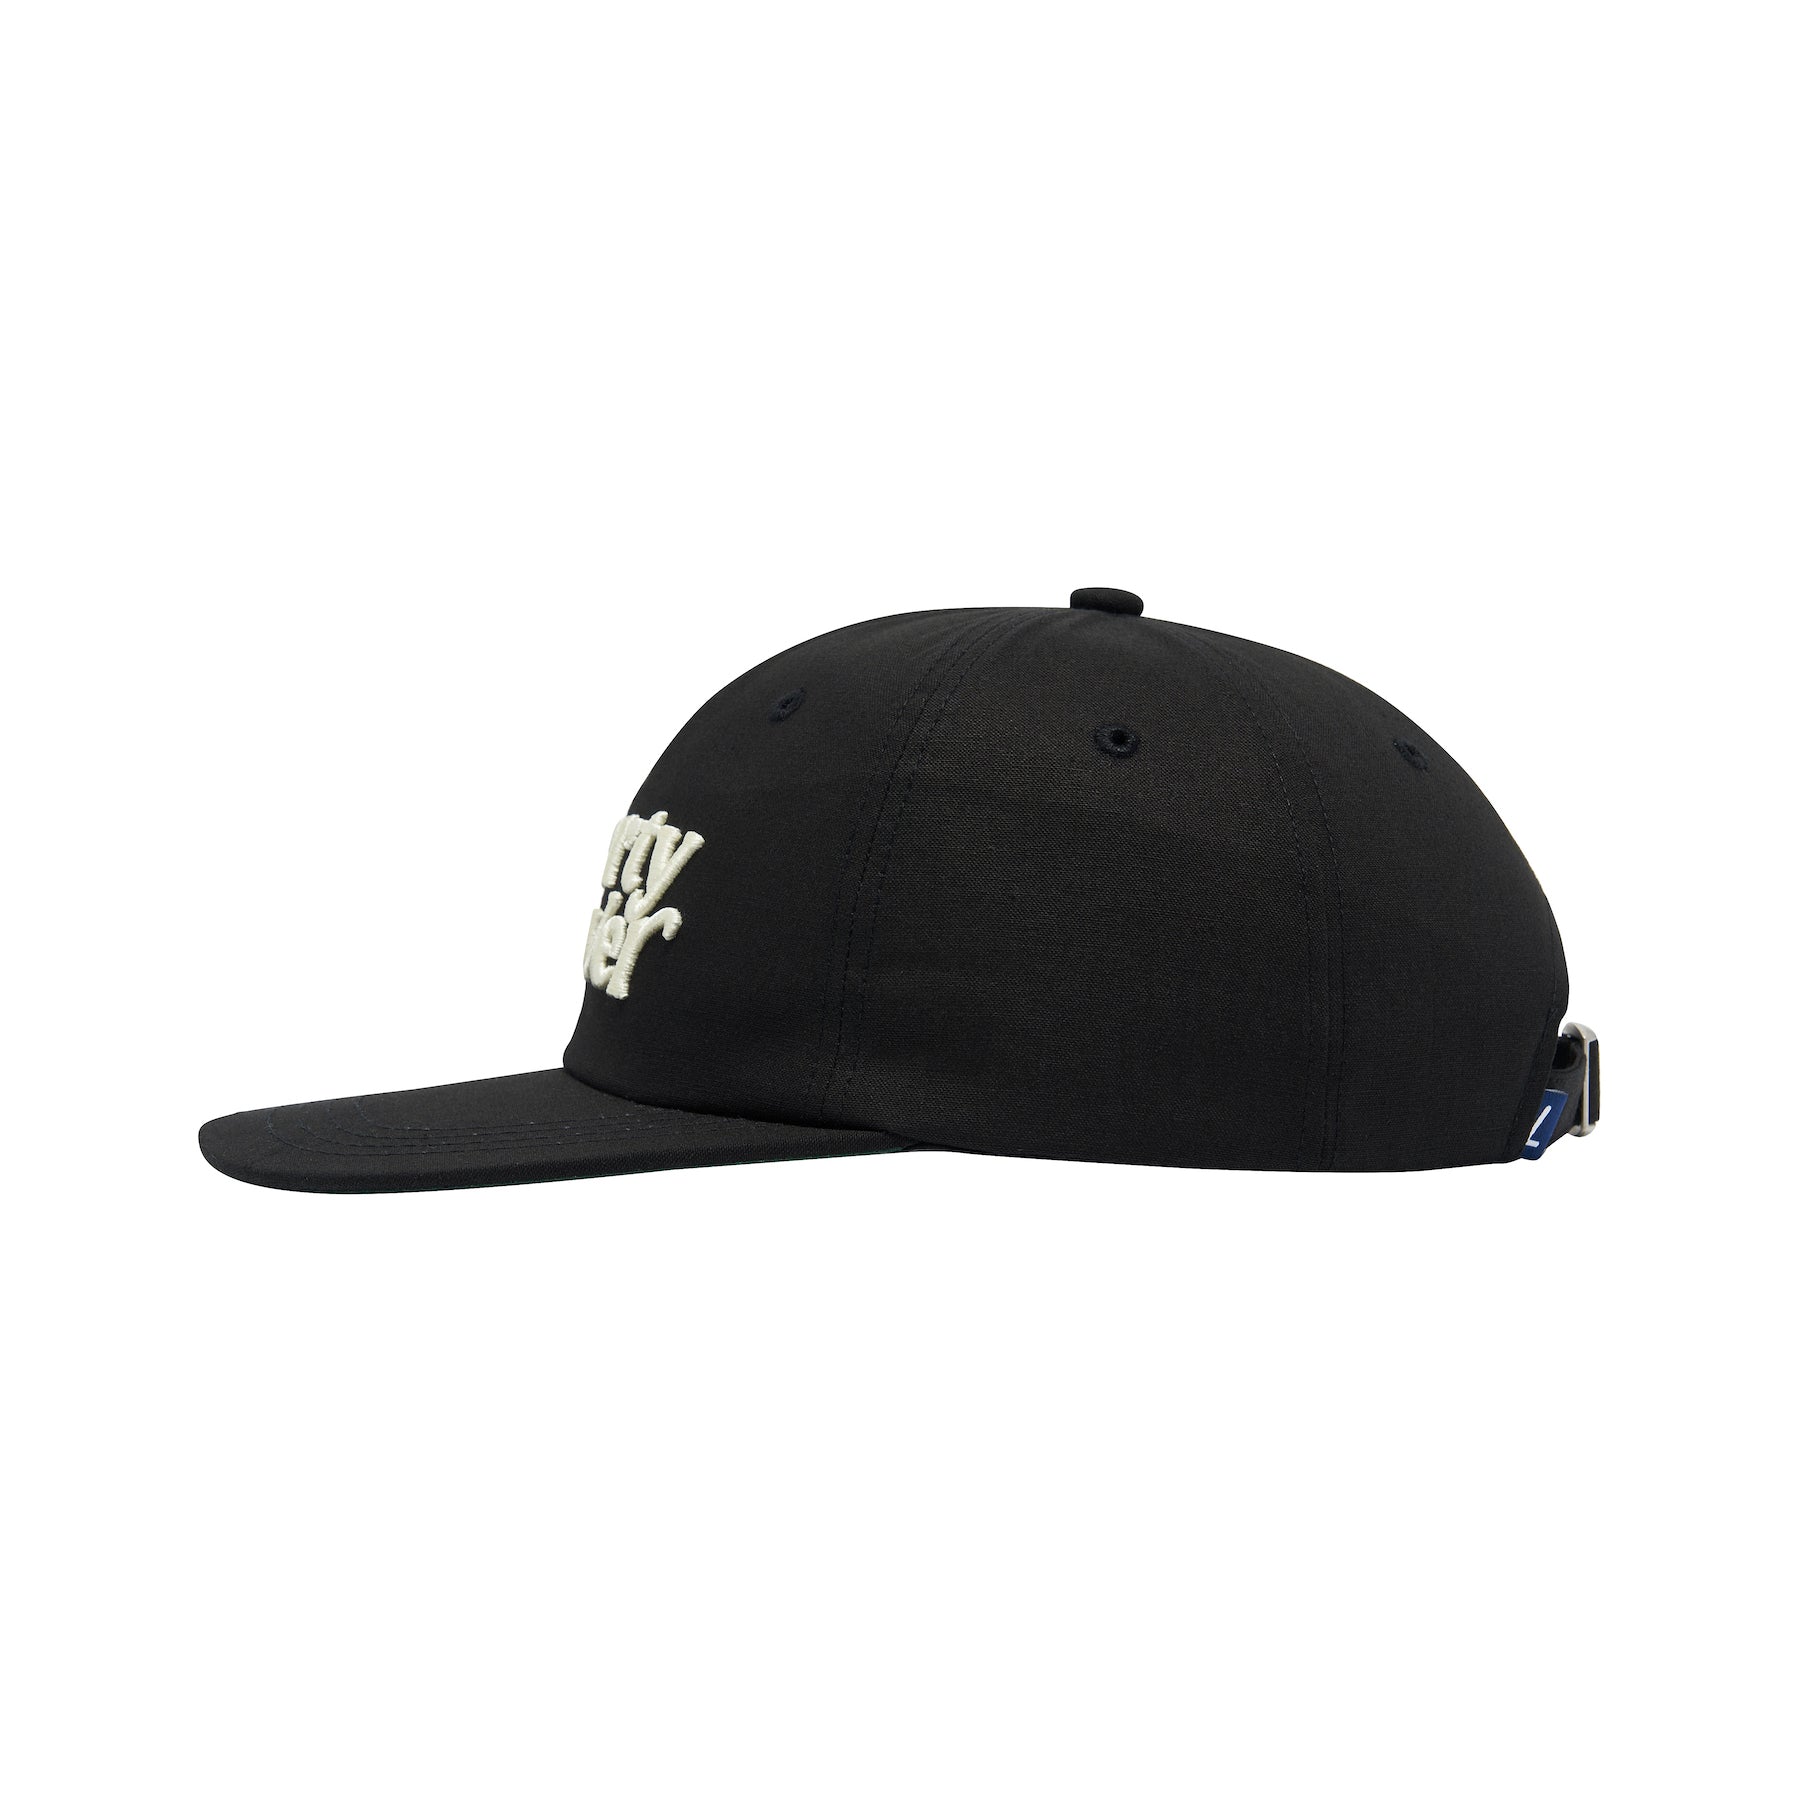 LF BASEBALL CAP / BLACK